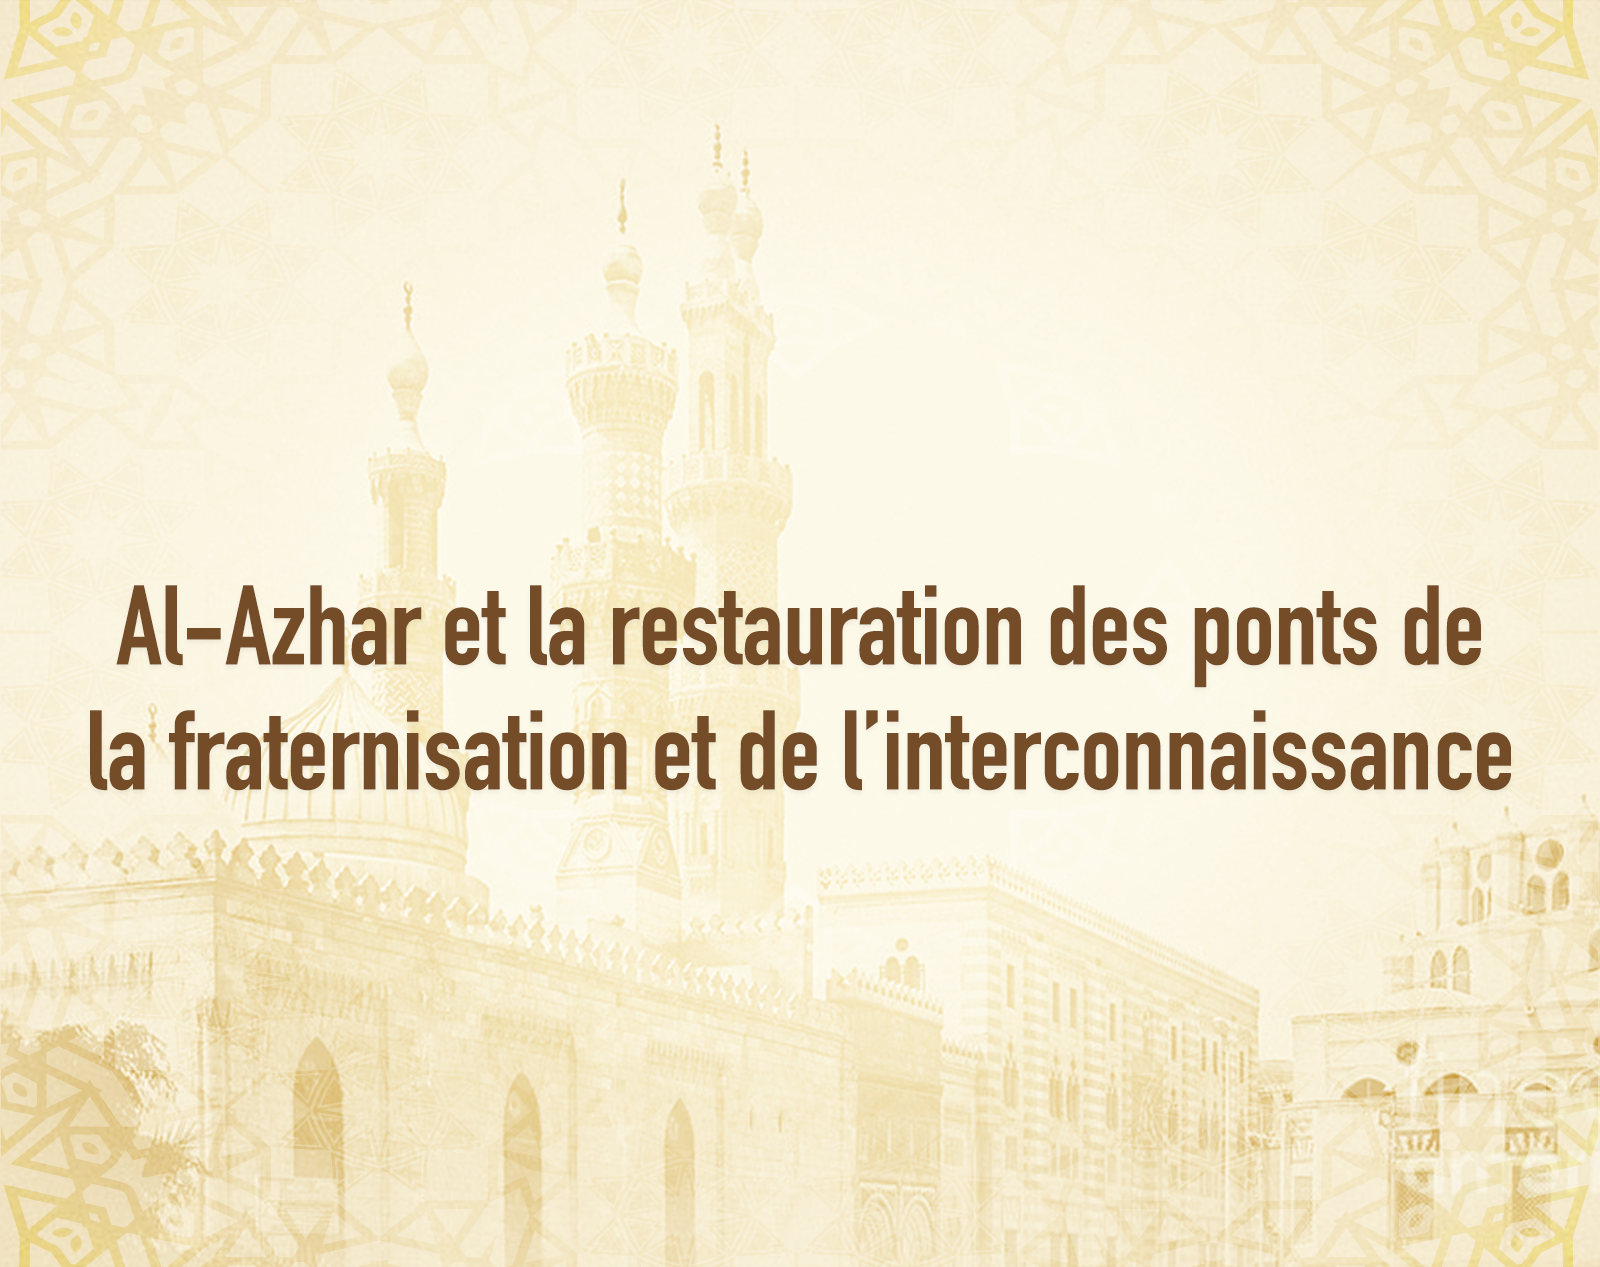 Al-Azhar et la restauration des ponts de la fraternisation et de l’interconnaissance.png